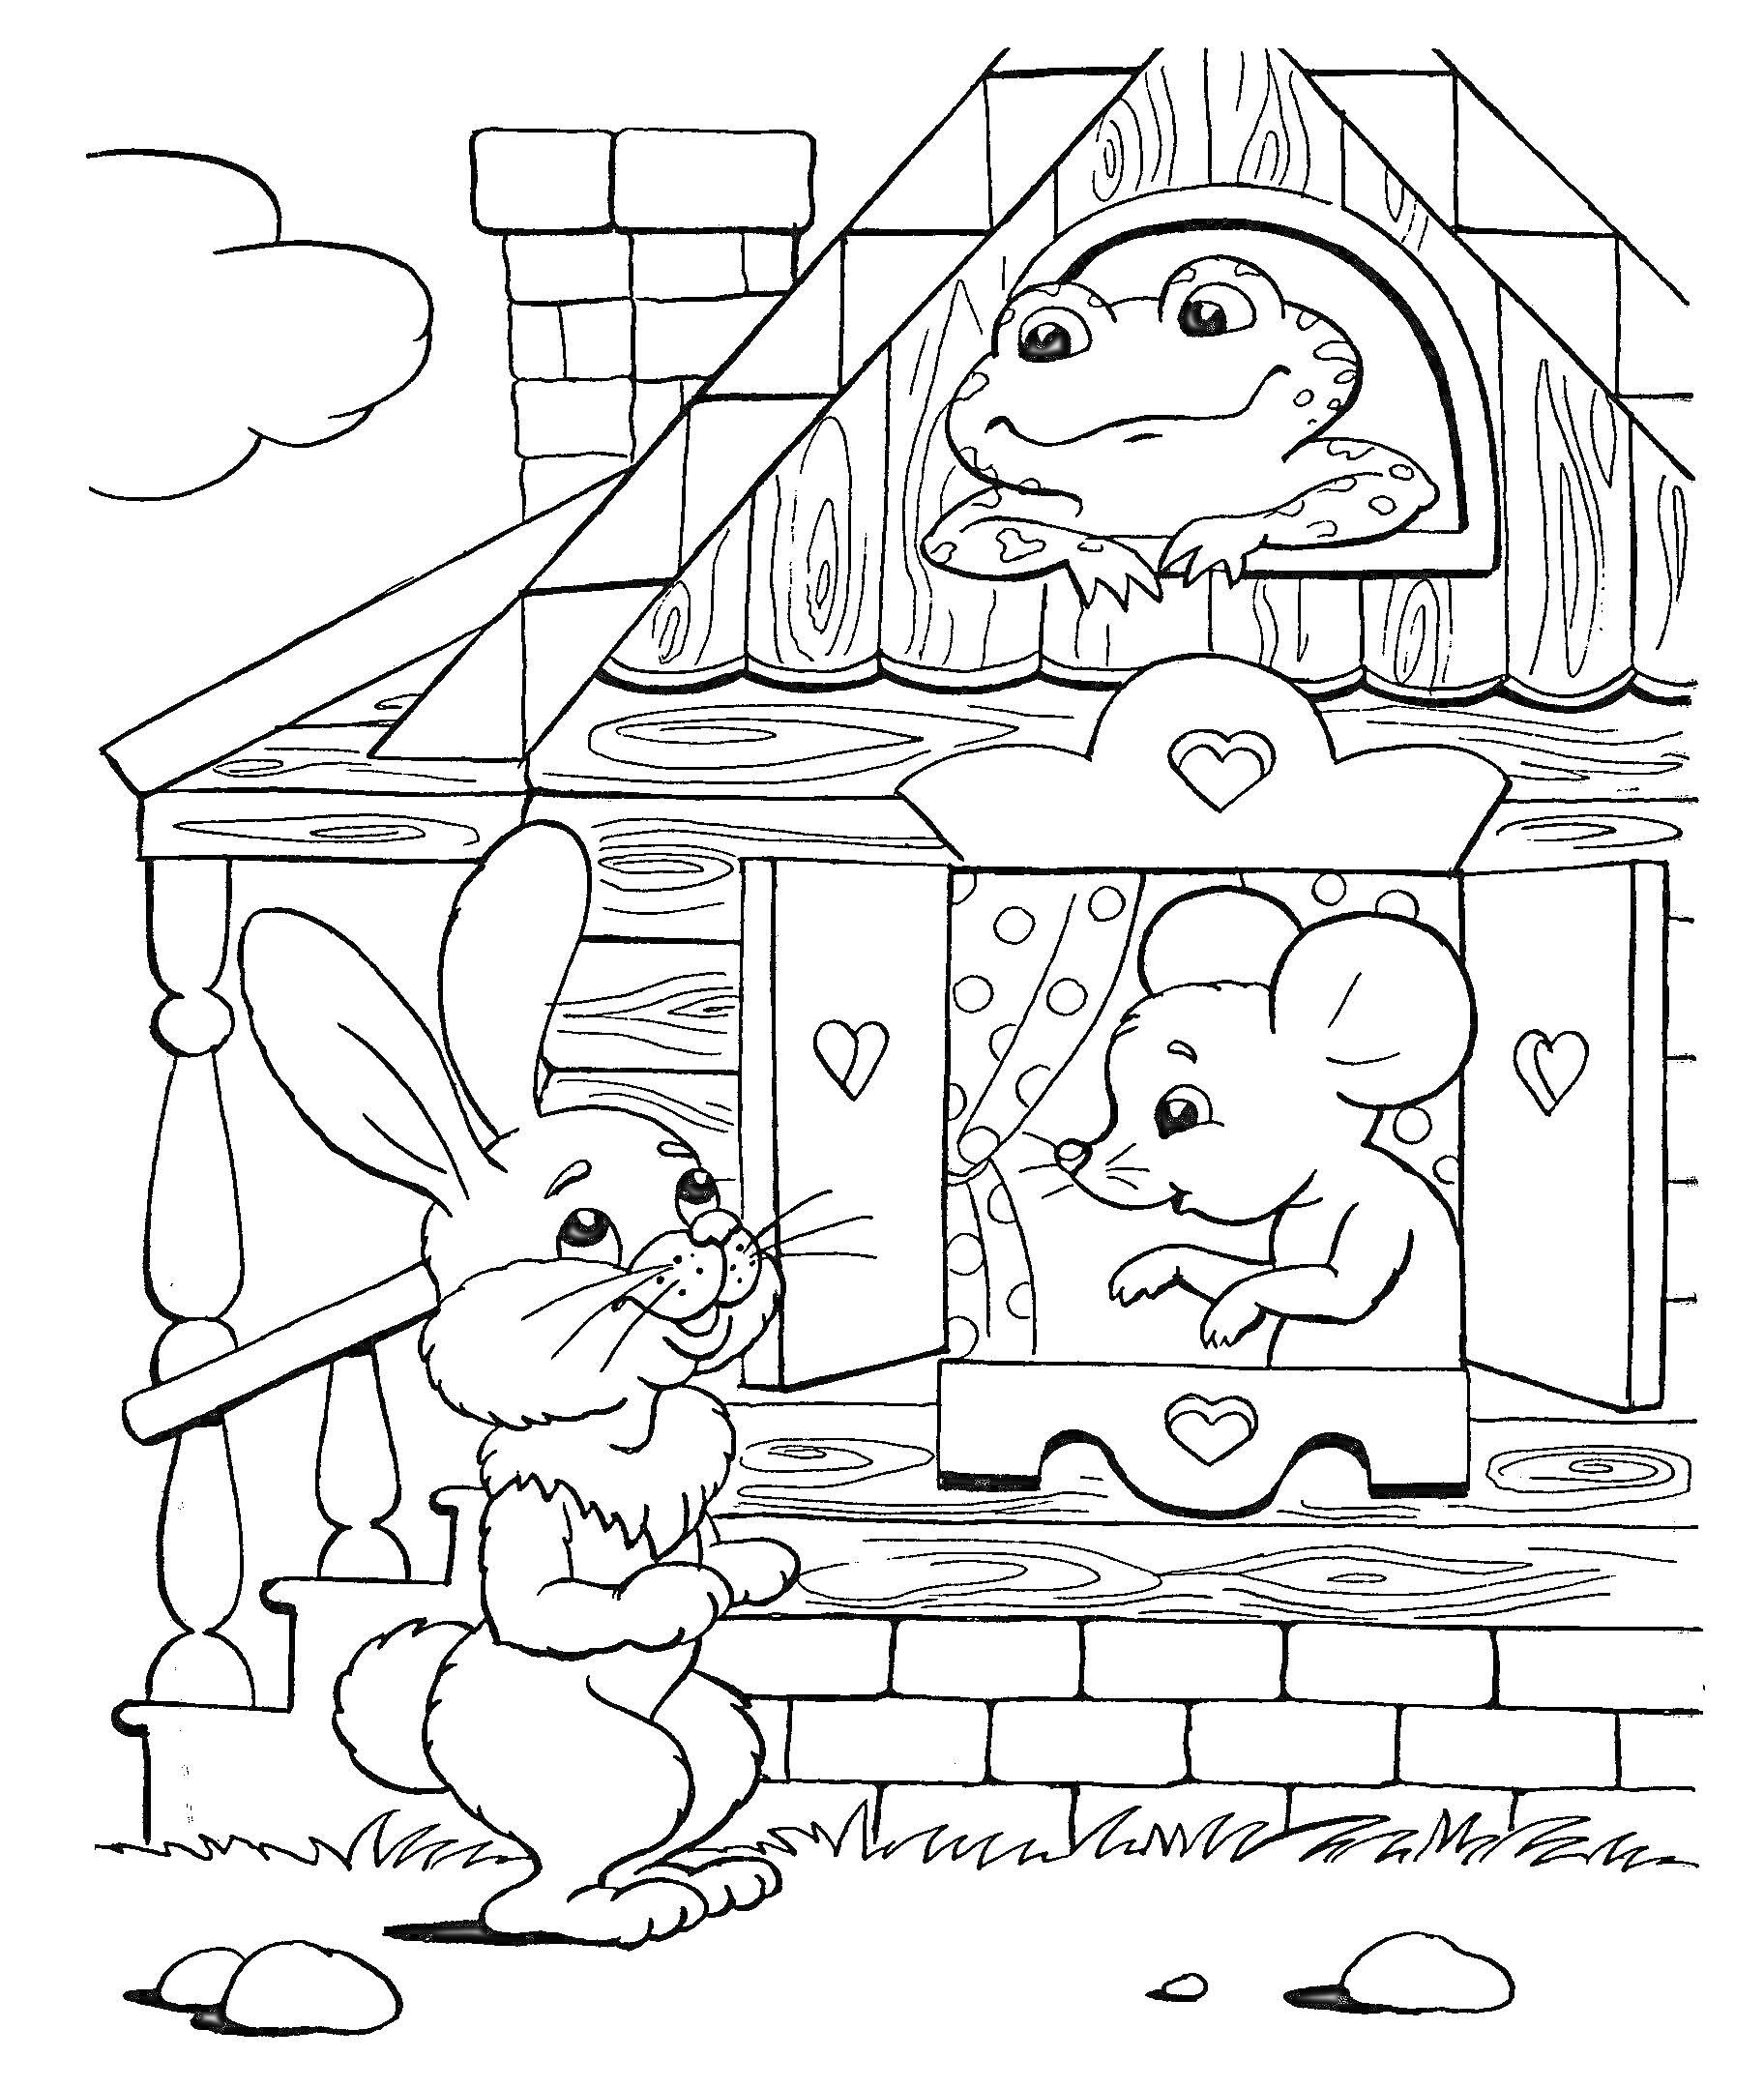 Раскраска Теремок с лягушкой, мышкой и зайцем